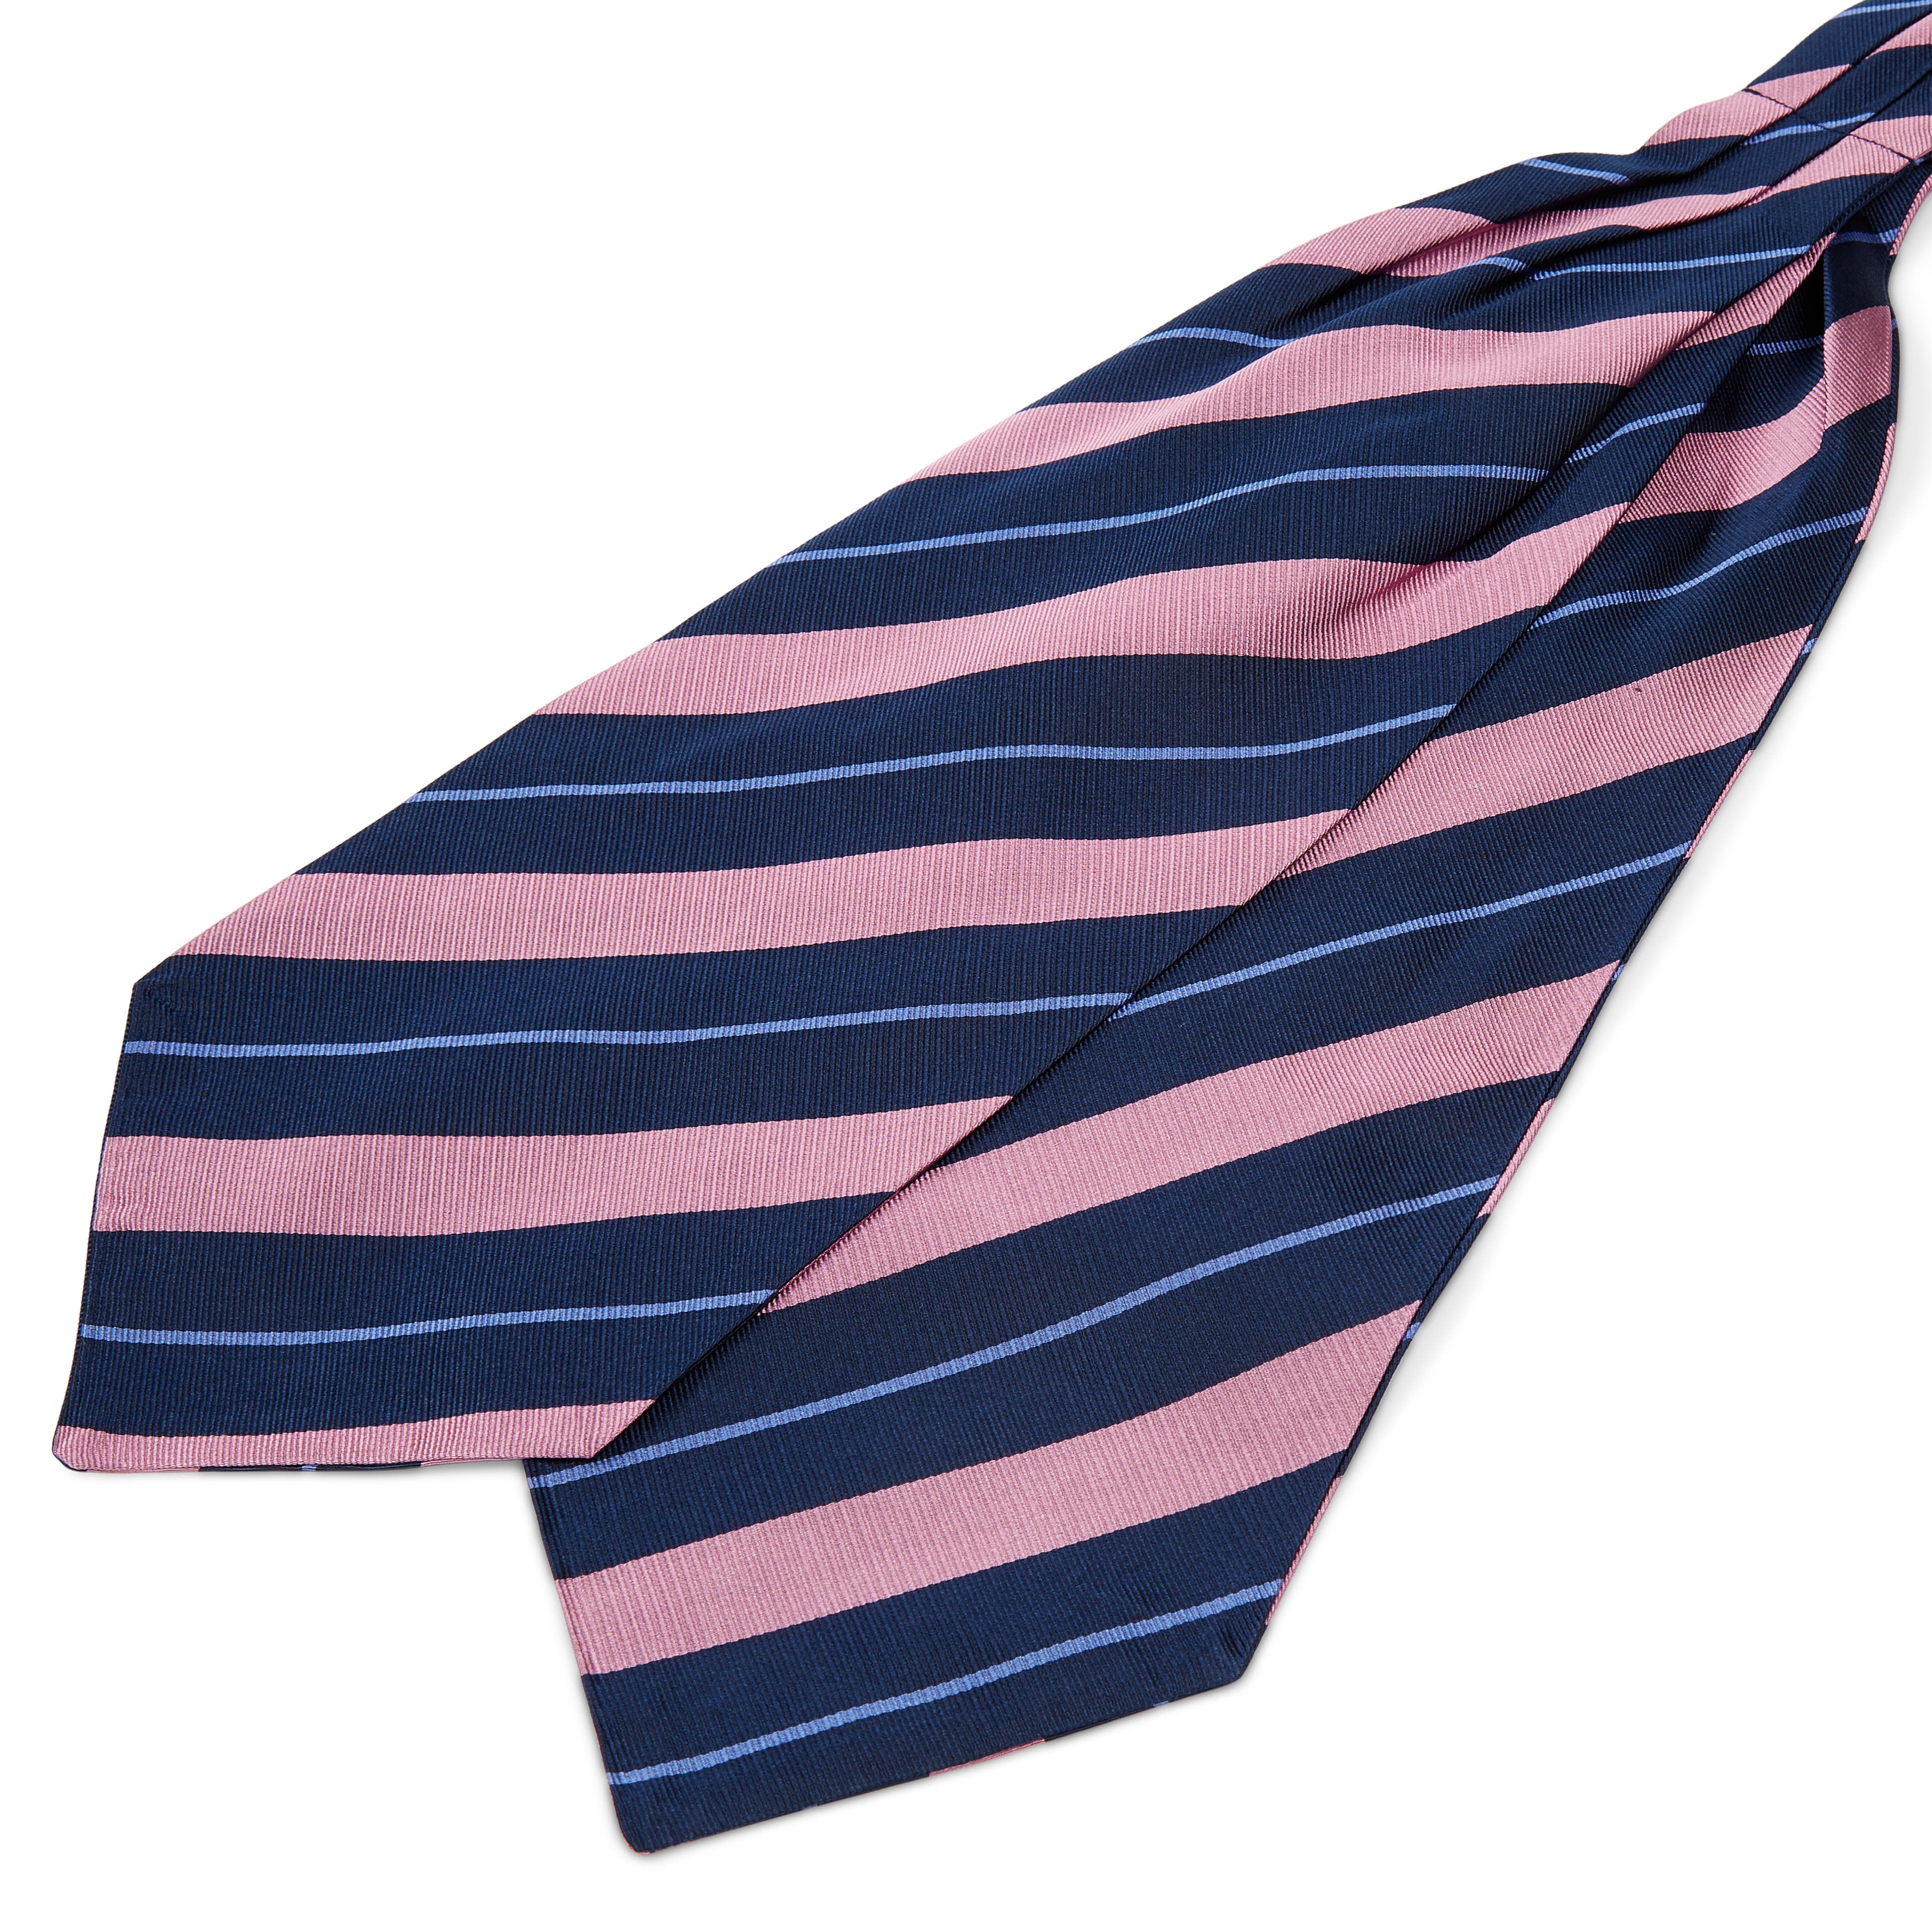 Tengerészkék-rózsaszín-pasztellkék csíkos selyem kravátli